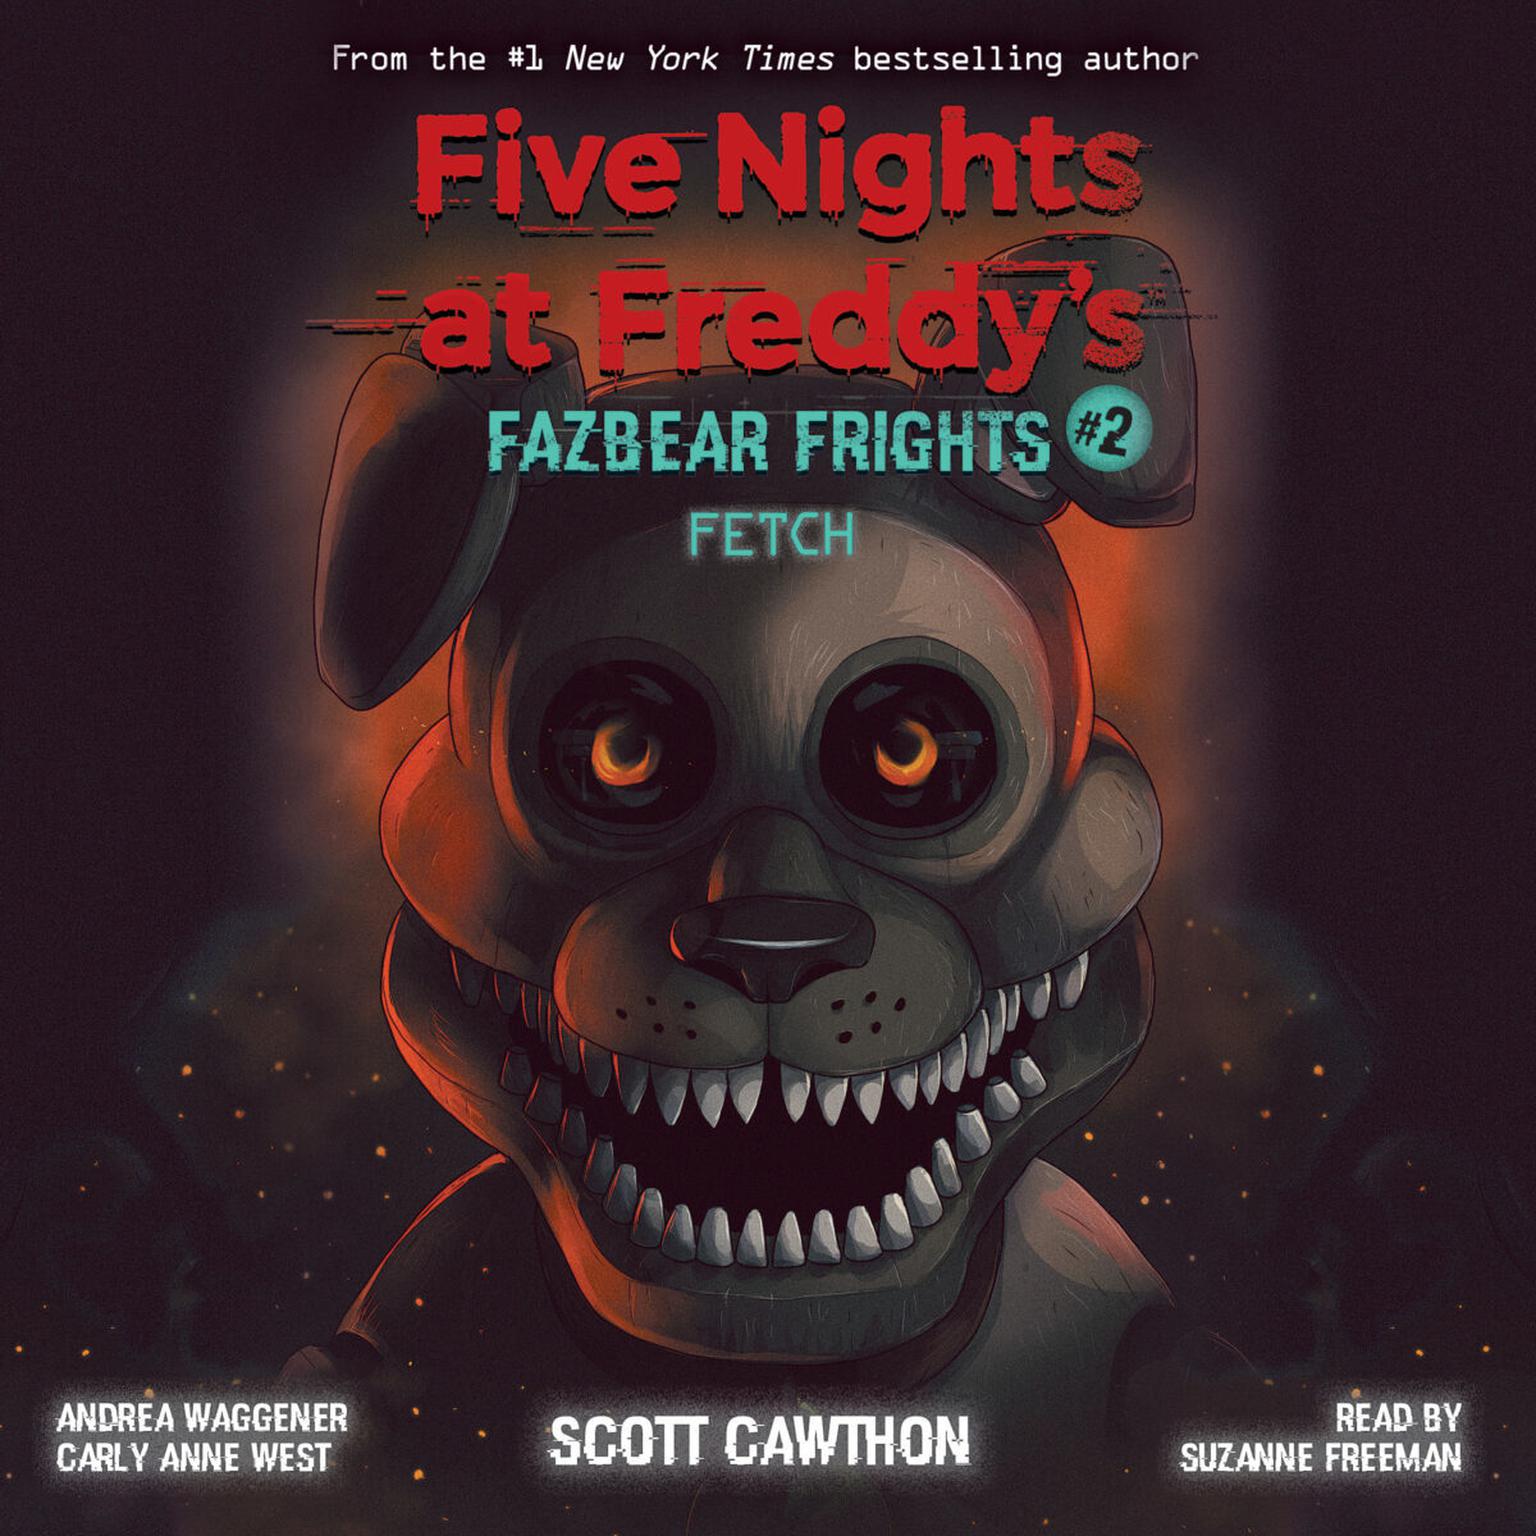 Ужасы фнаф книга. Книга Fazbear's Fright. Five Nights at Freddy s книга Fazbear Fright. Fazbear Frights книги. Книга Фредди Скотт Коутон.